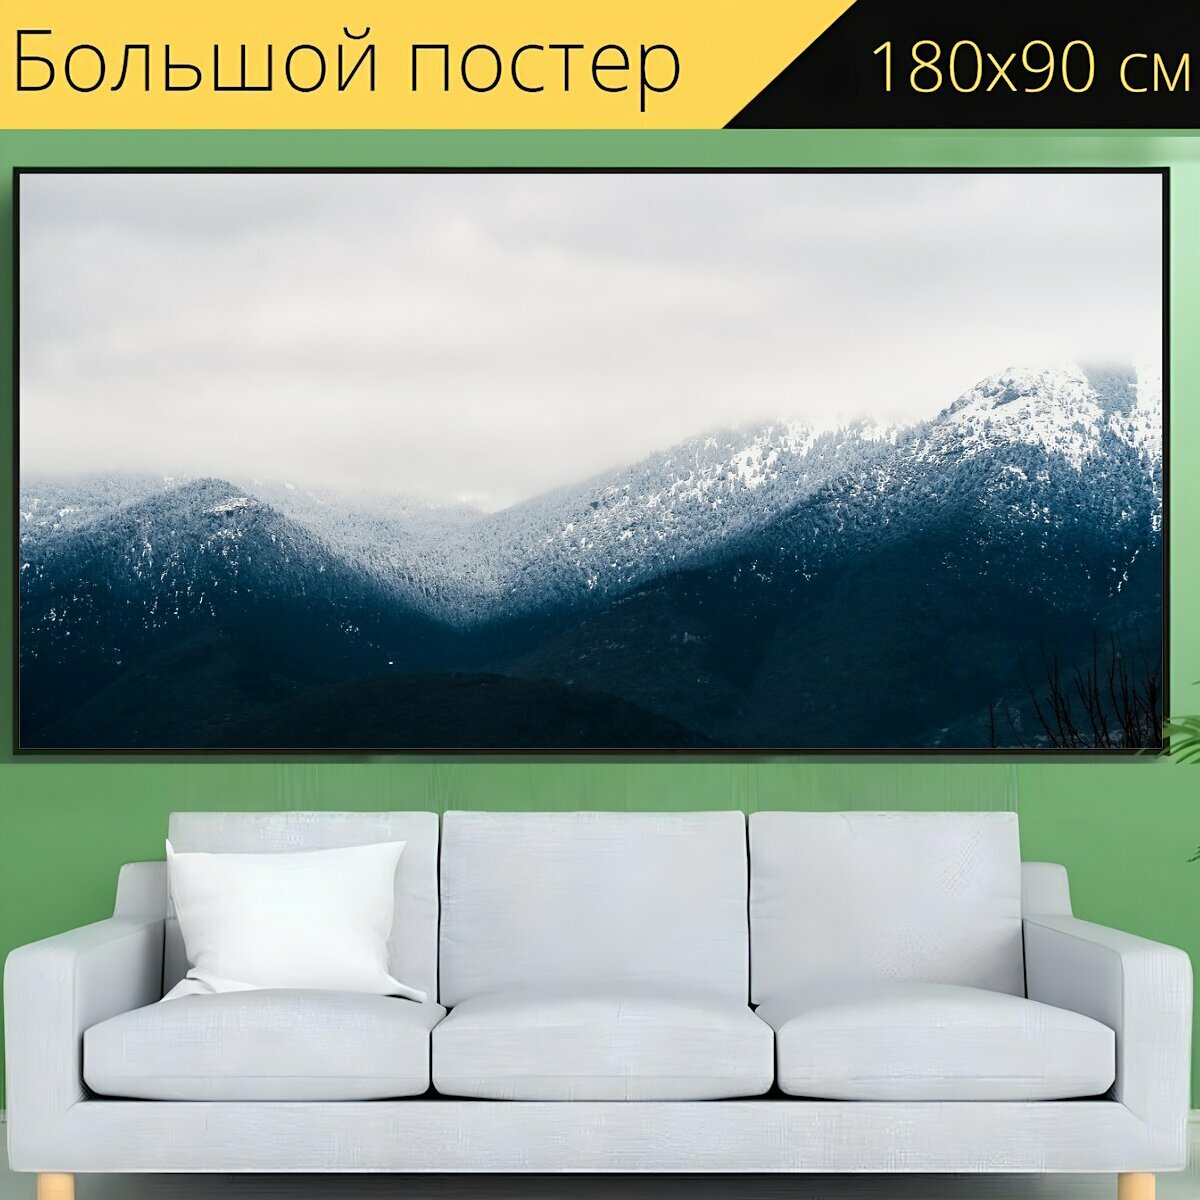 Большой постер "Гора, пейзаж, пик" 180 x 90 см. для интерьера